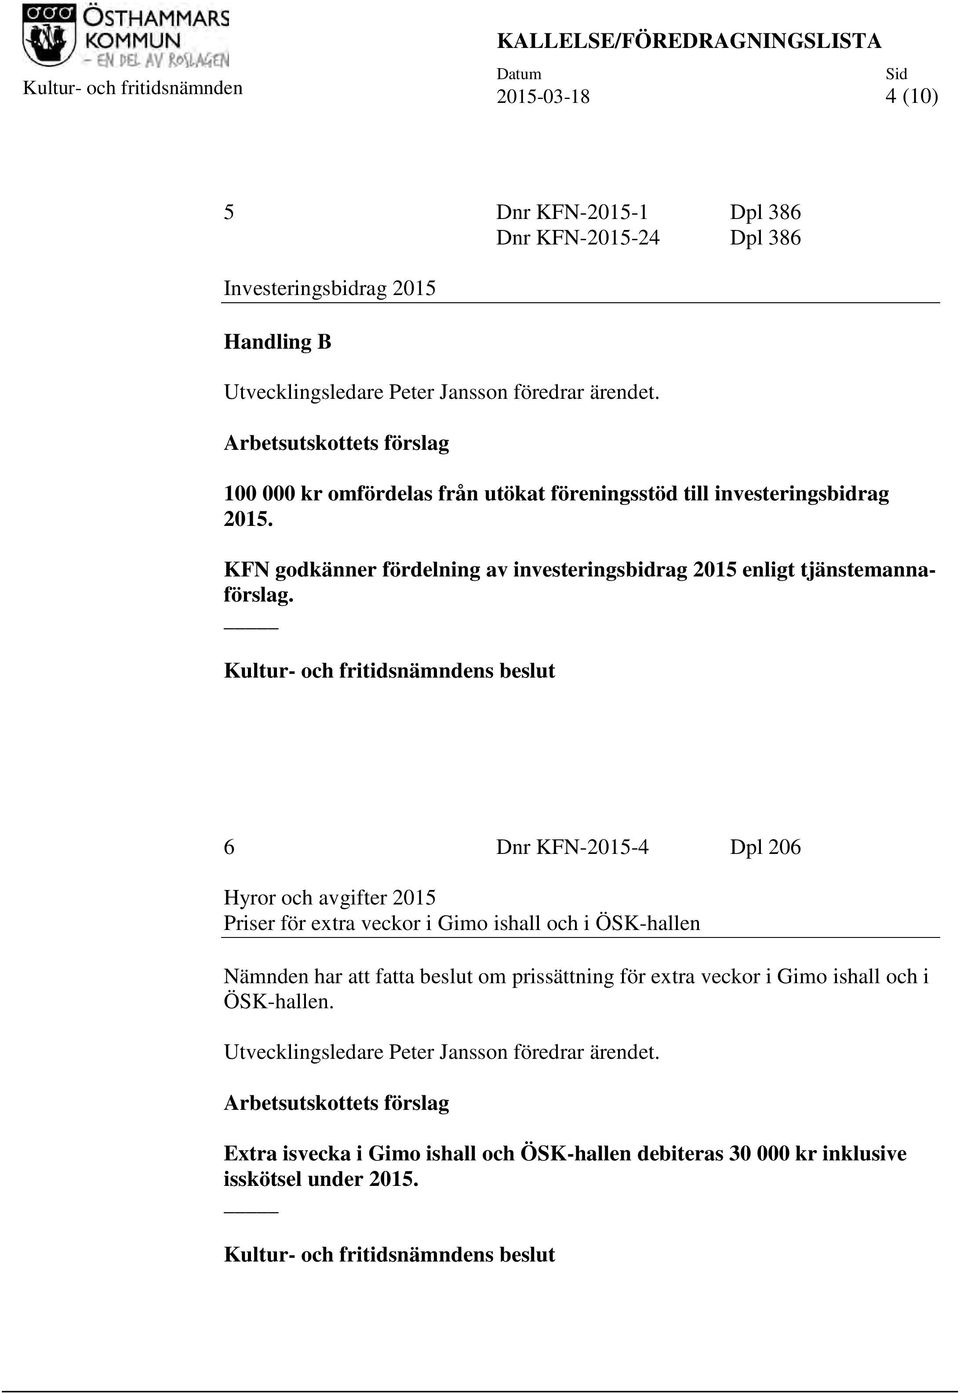 KFN godkänner fördelning av investeringsbidrag 2015 enligt tjänstemannaförslag.